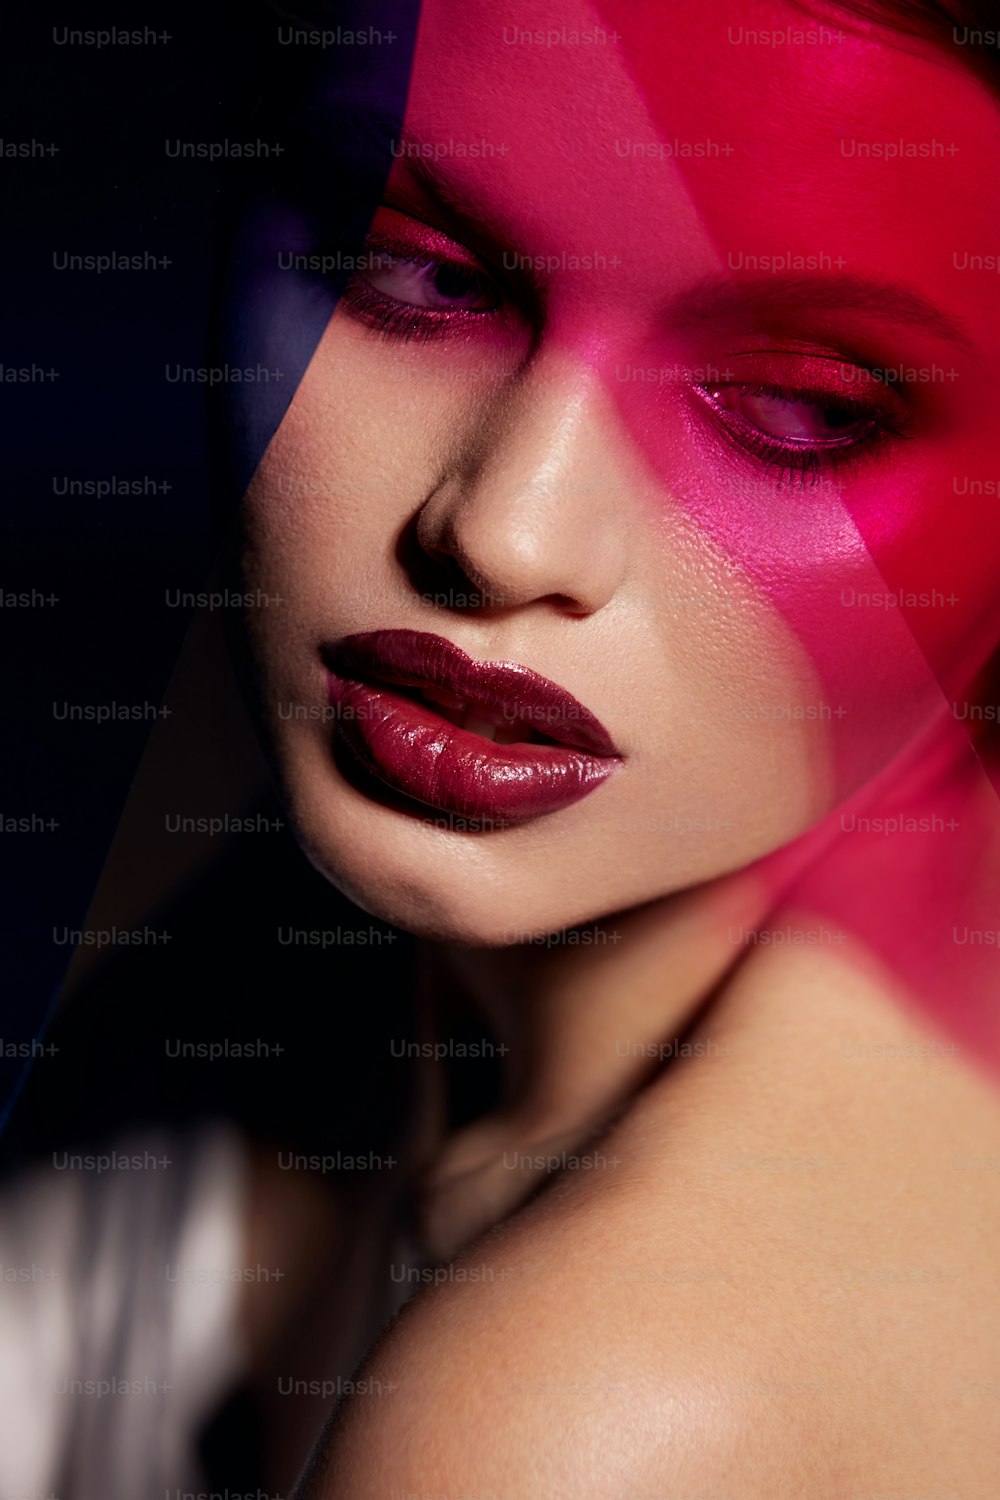 Beauty-Gesichts-Make-up. Modeporträt eines Mädchenmodells mit Lippenstift unter Farbe. Nahaufnahme eines glamourösen Mädchens mit sexy dunkelroten Lippen, Make-up und strahlender Haut unter rosa und lila Farben. Hochwertige